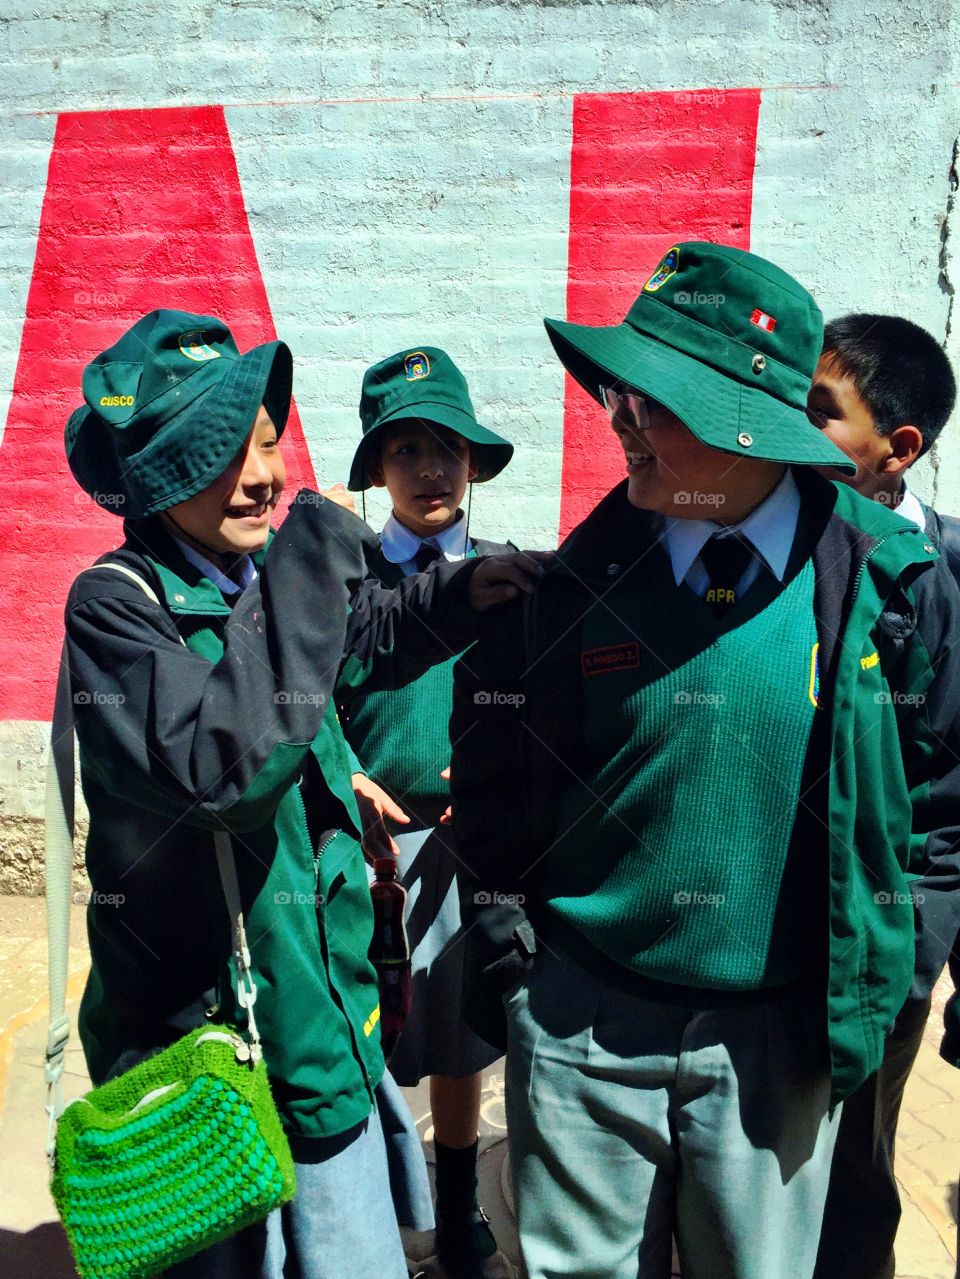 Some Peruvian kids in Uniform in the city of Cusco, Peru